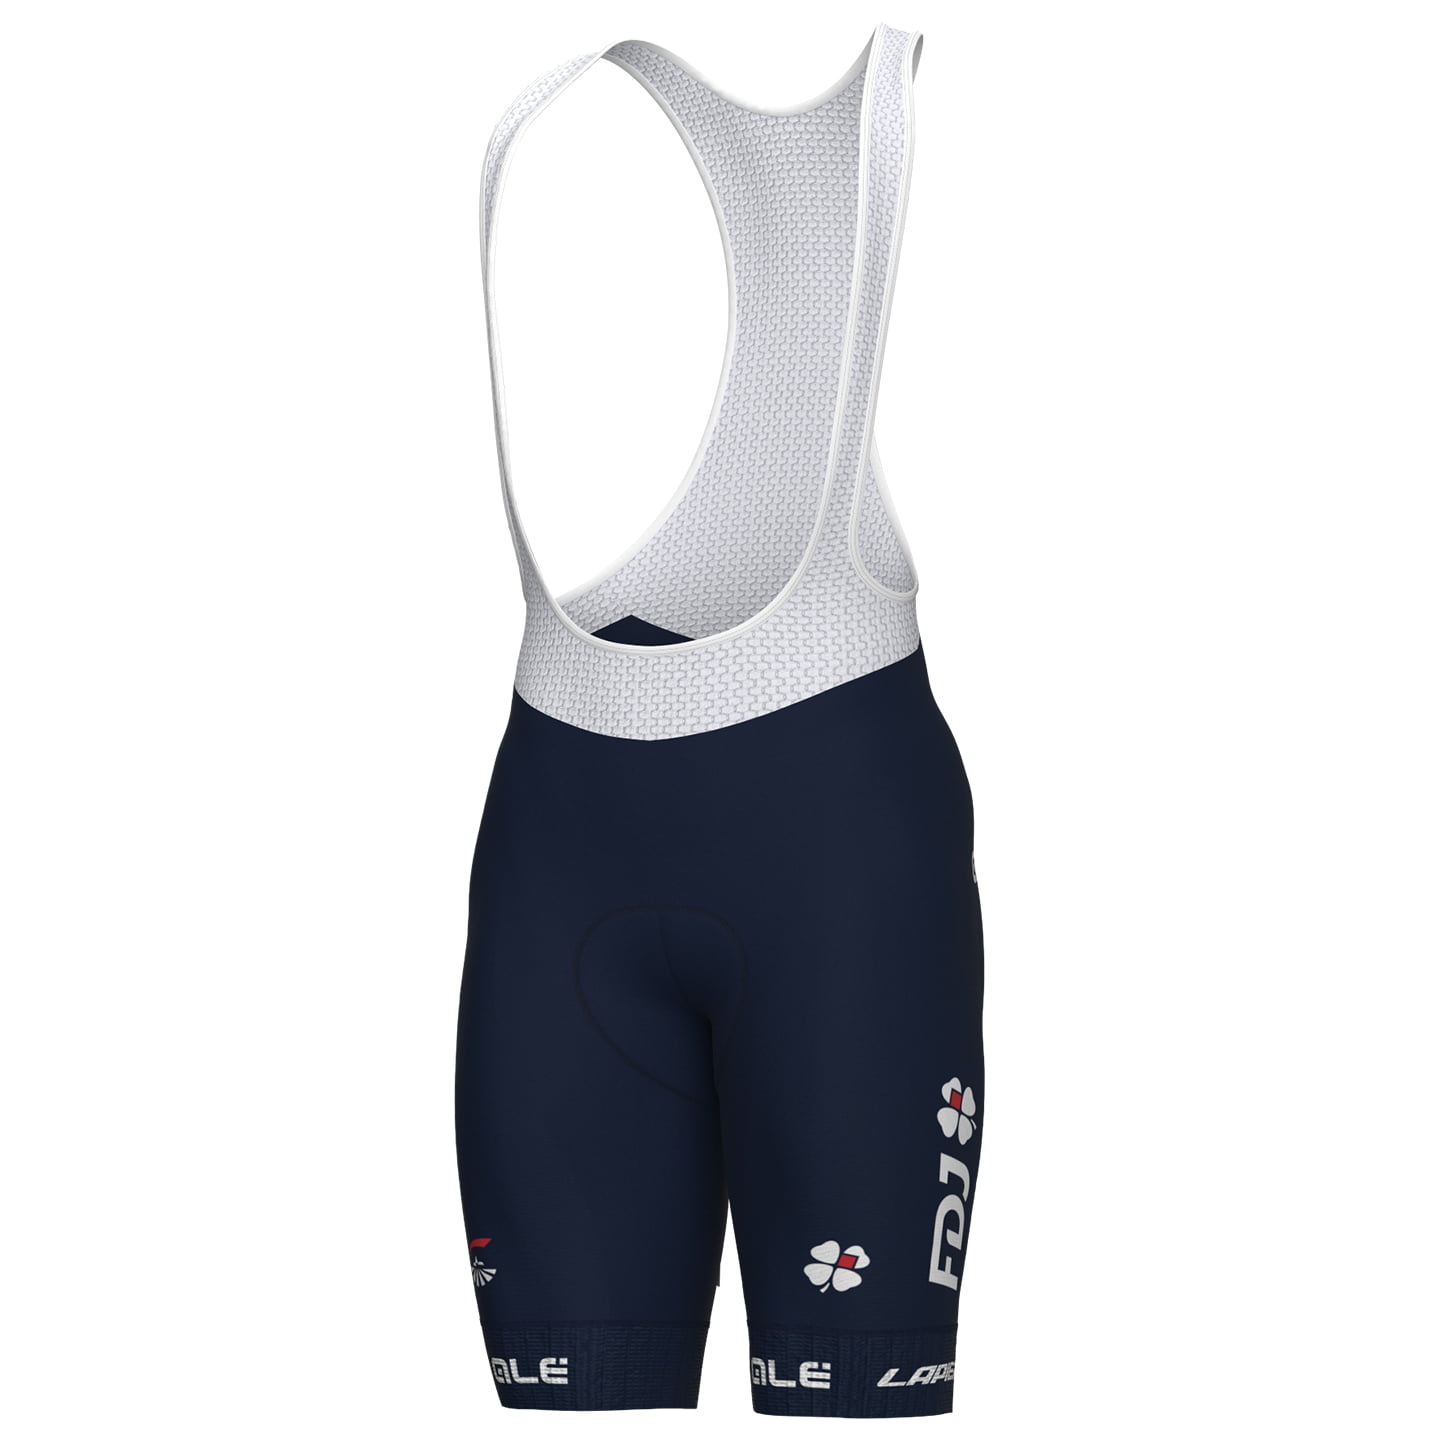 GROUPAMA - FDJ 2023 Bib Shorts, for men, size 3XL, Cycling bibs, Bike gear